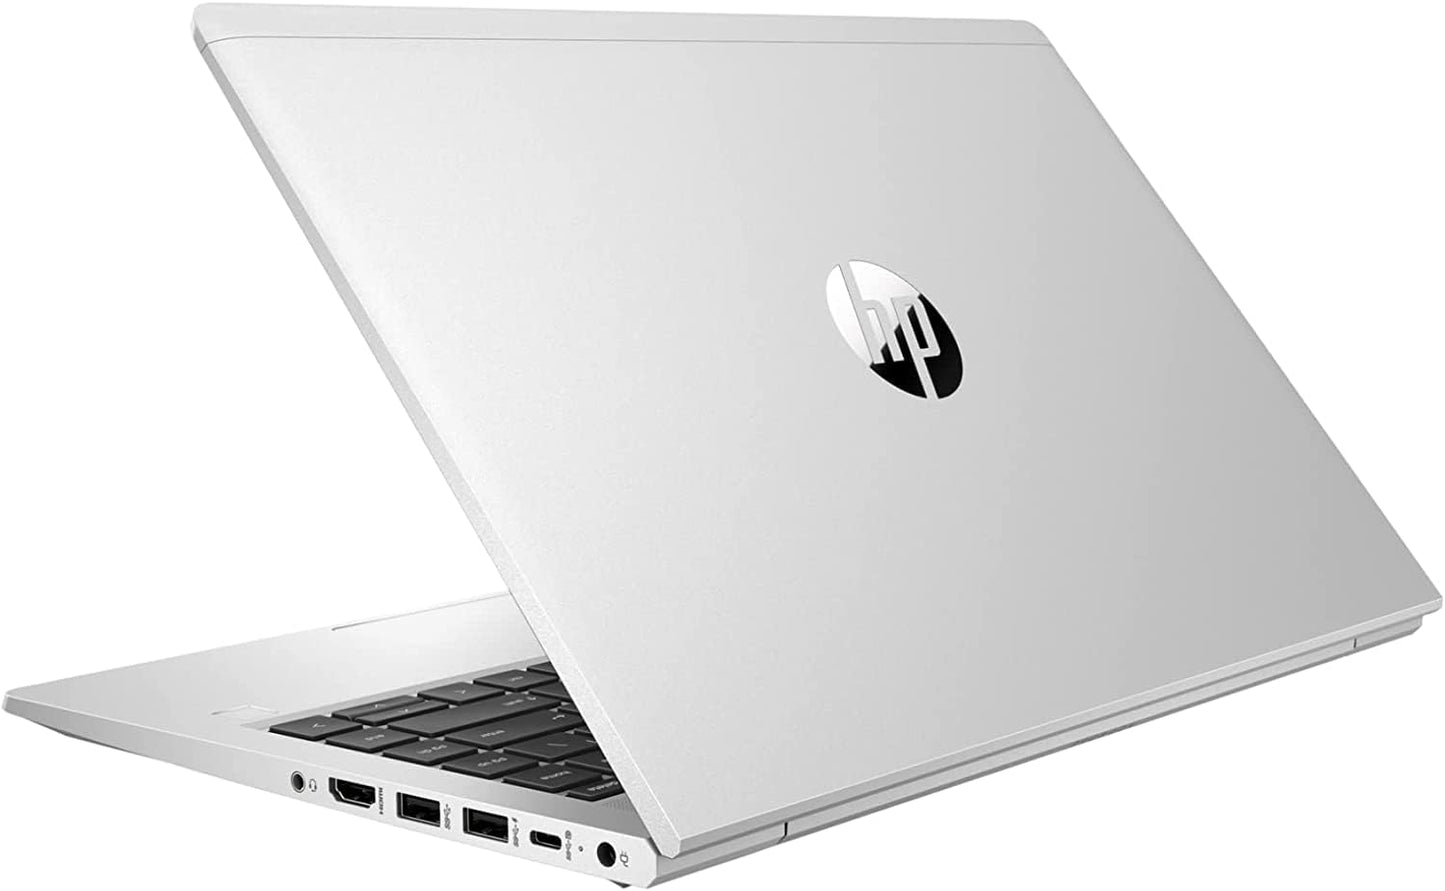 HP Probook 445 G8, AMD Ryzen 5 5600U, 8GB DDR4, 512 GB SSD, W10 Pro, Garantia 1 Año